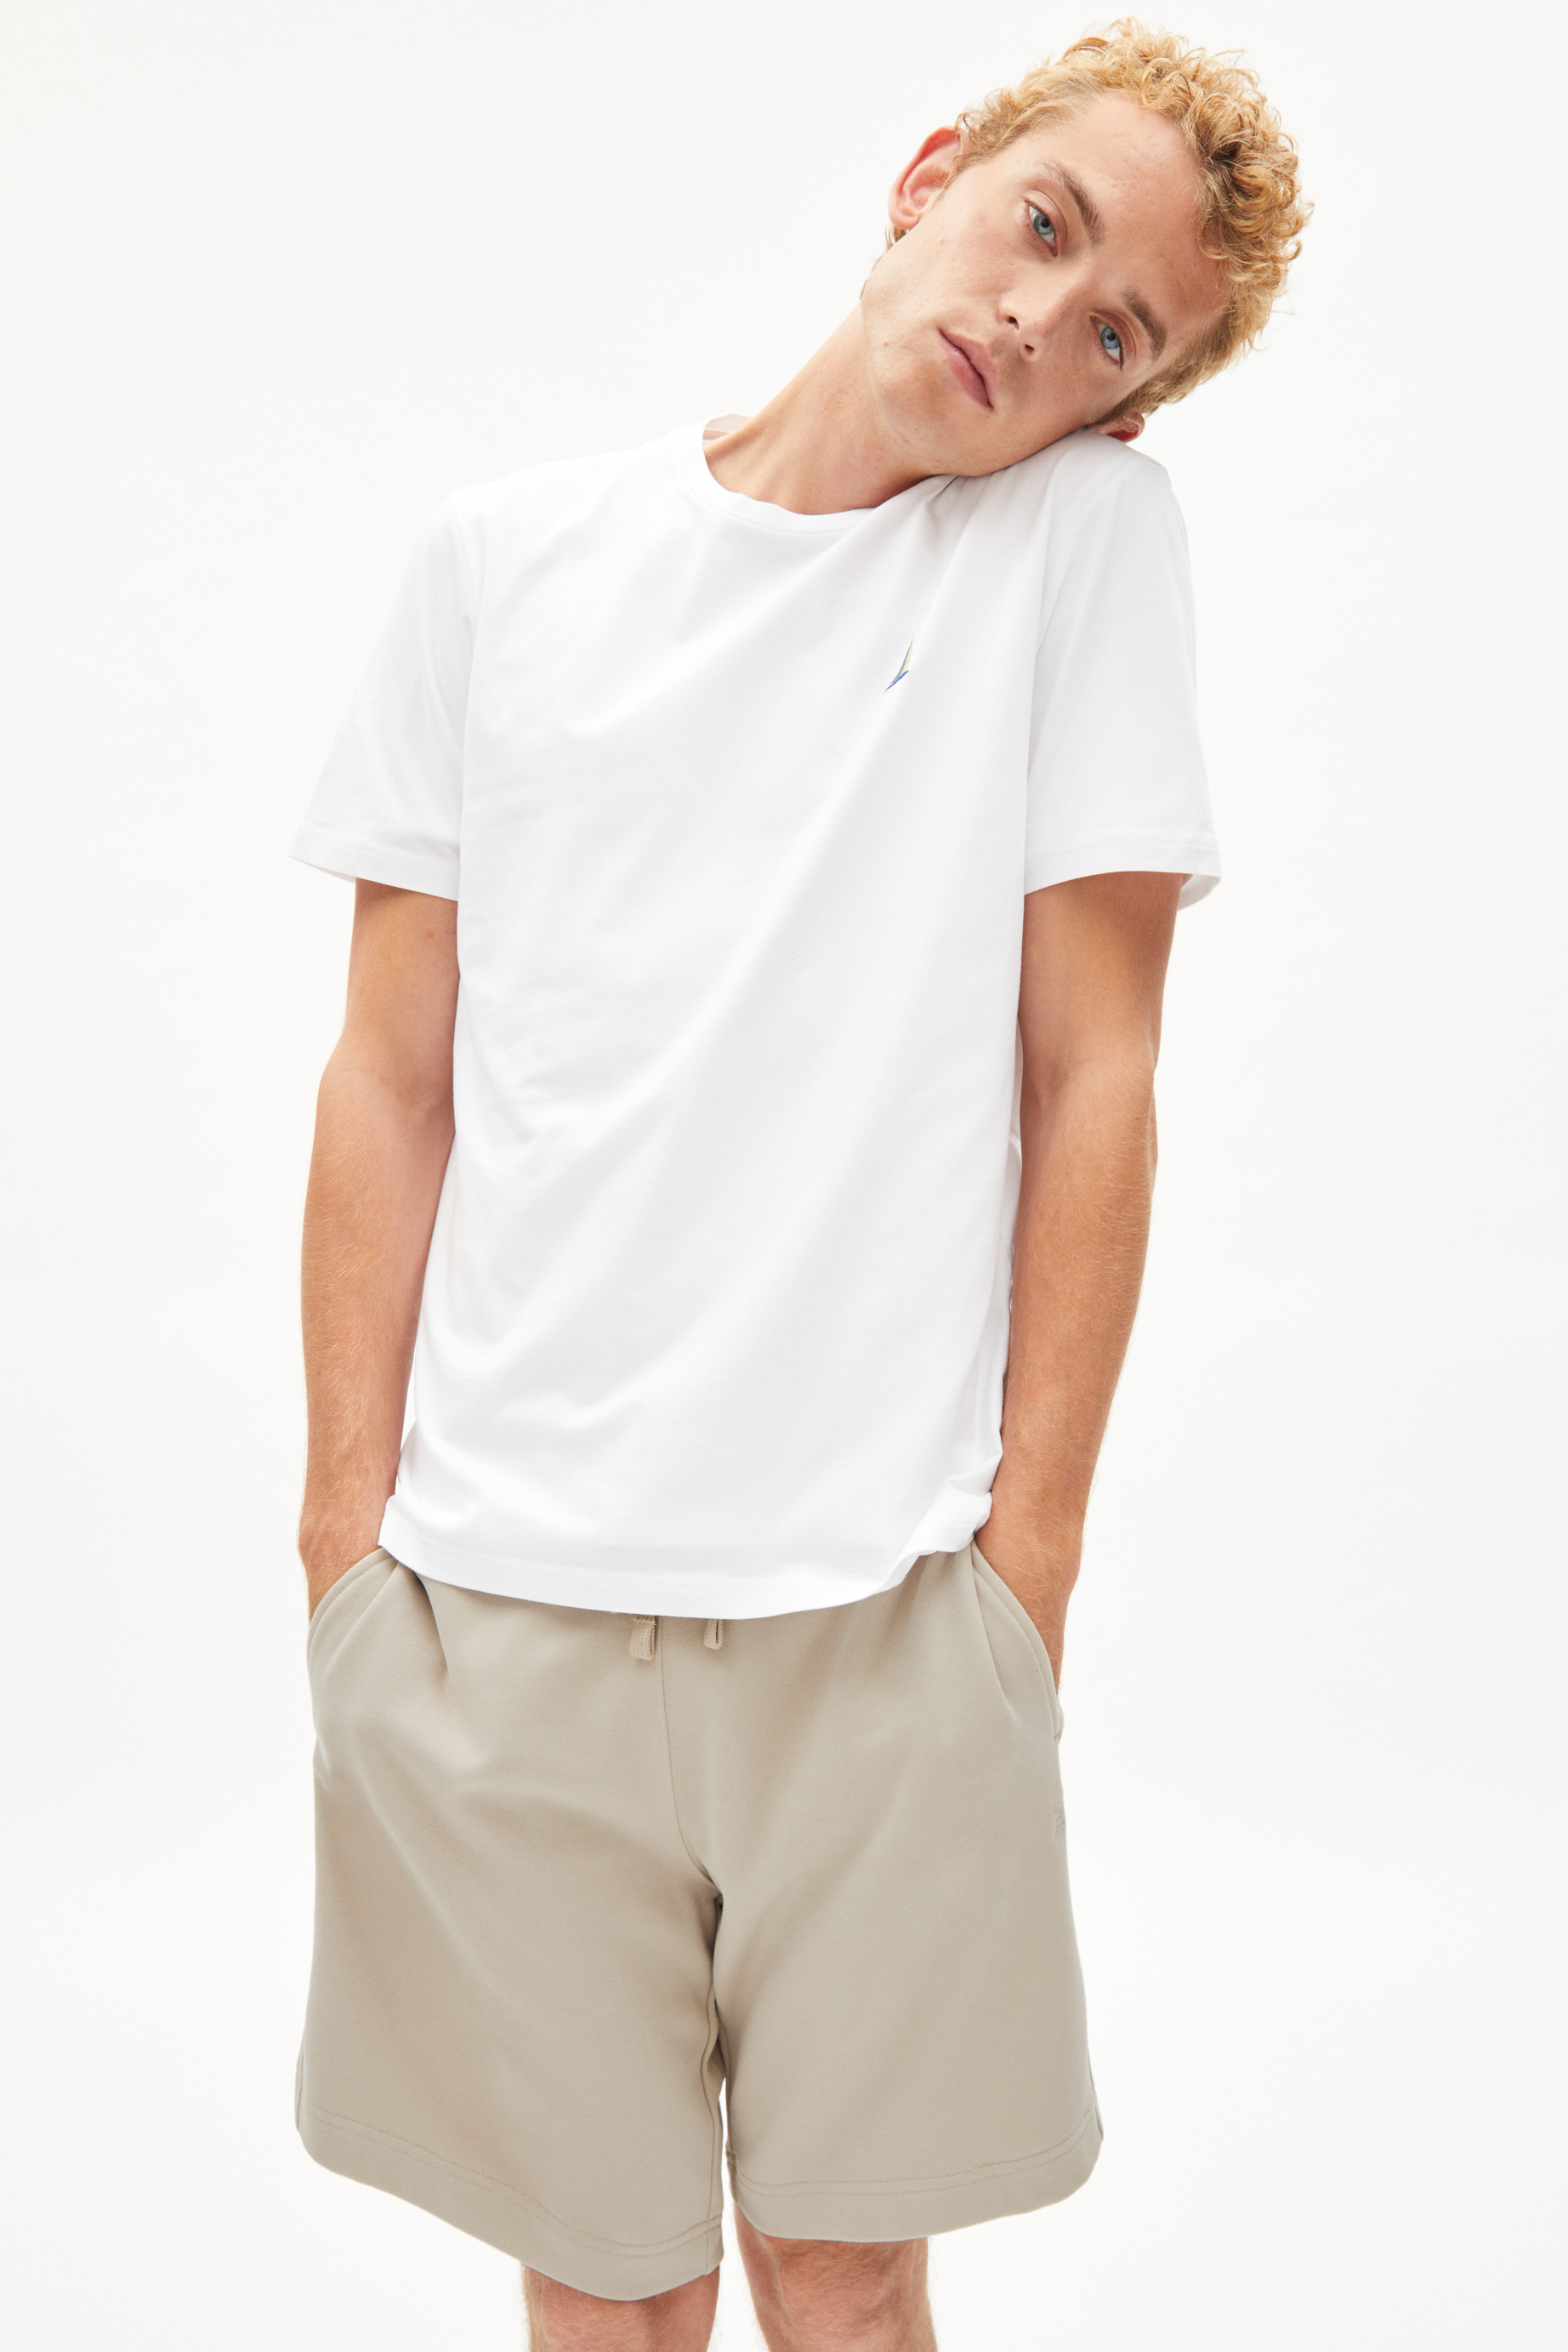 T-Shirt JAAMES BOAT white mit Stickerei